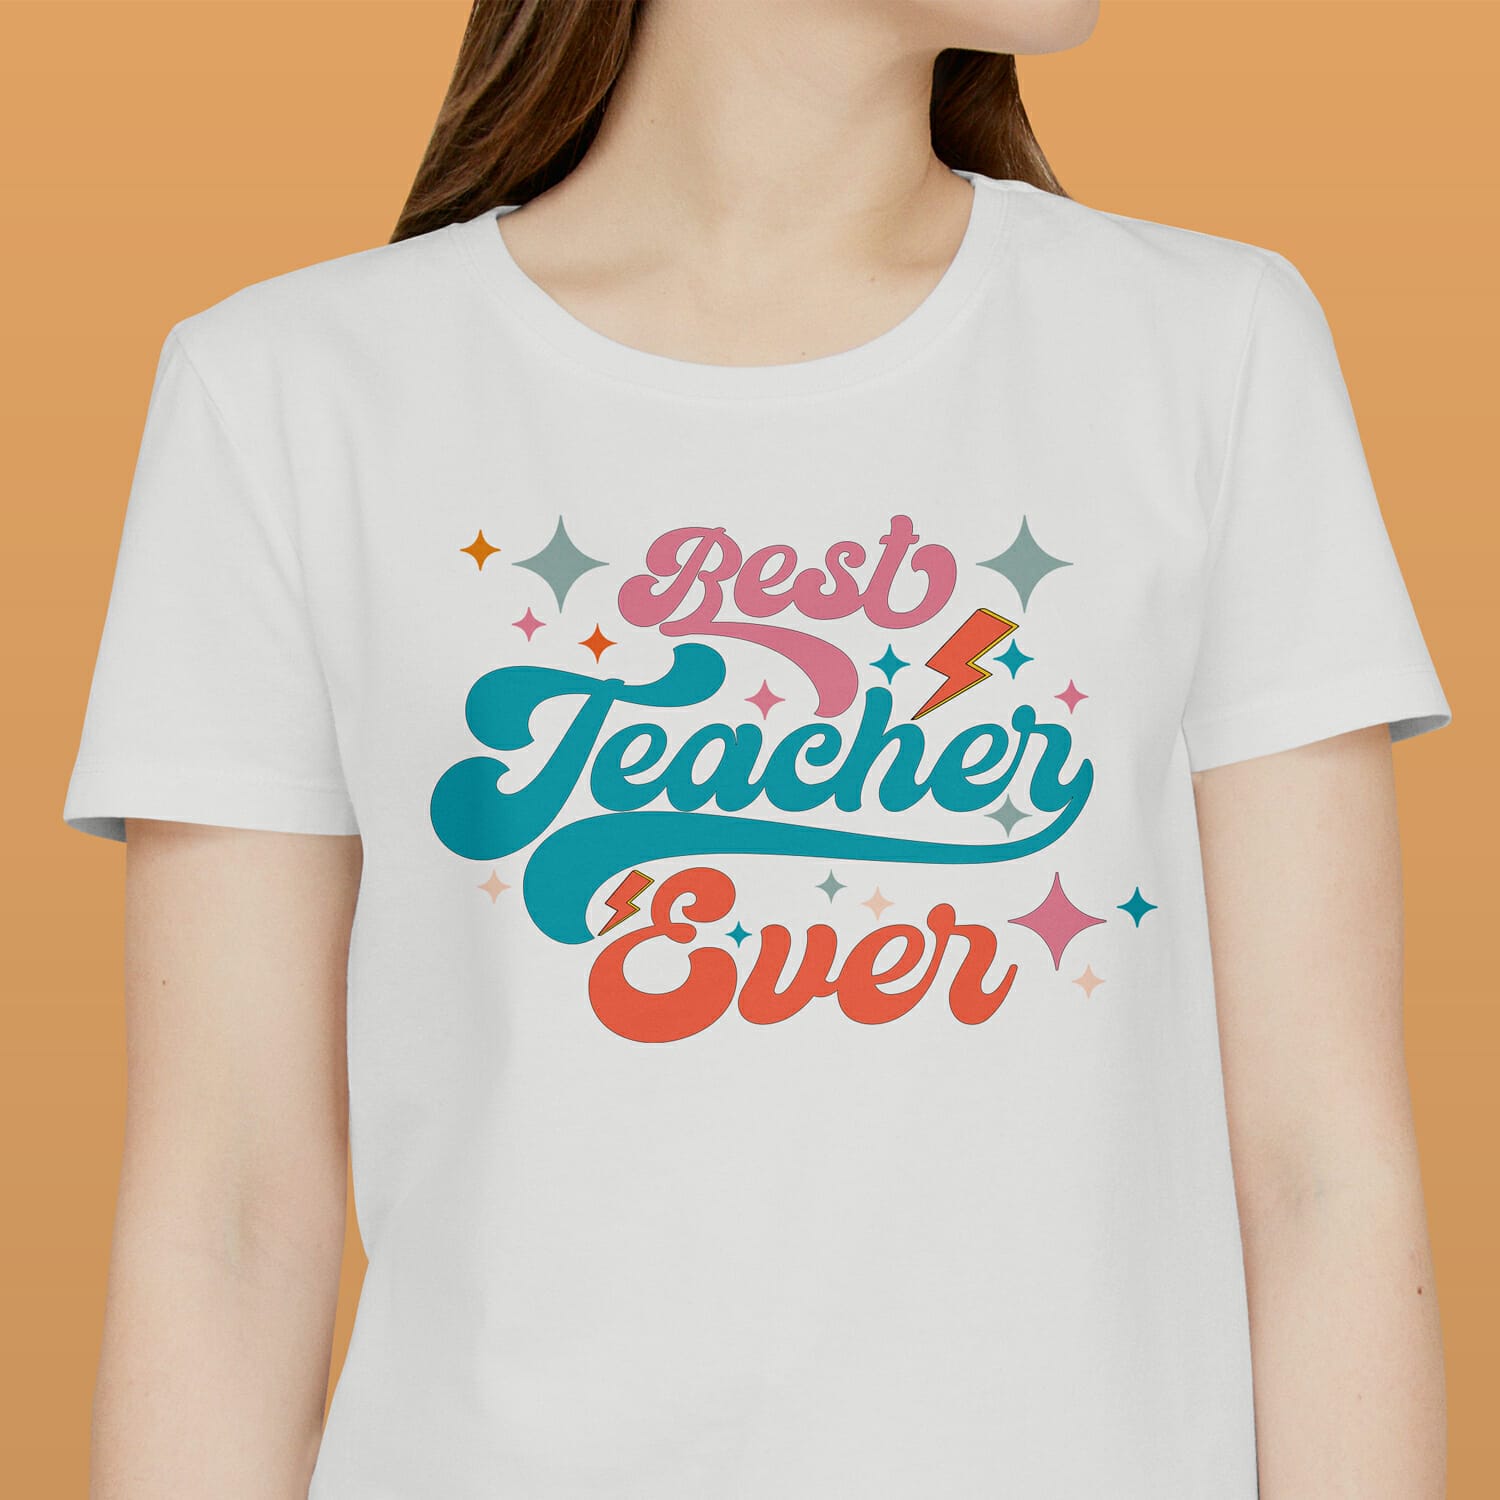 Best Teacher Ever T-shirt design for Teacher